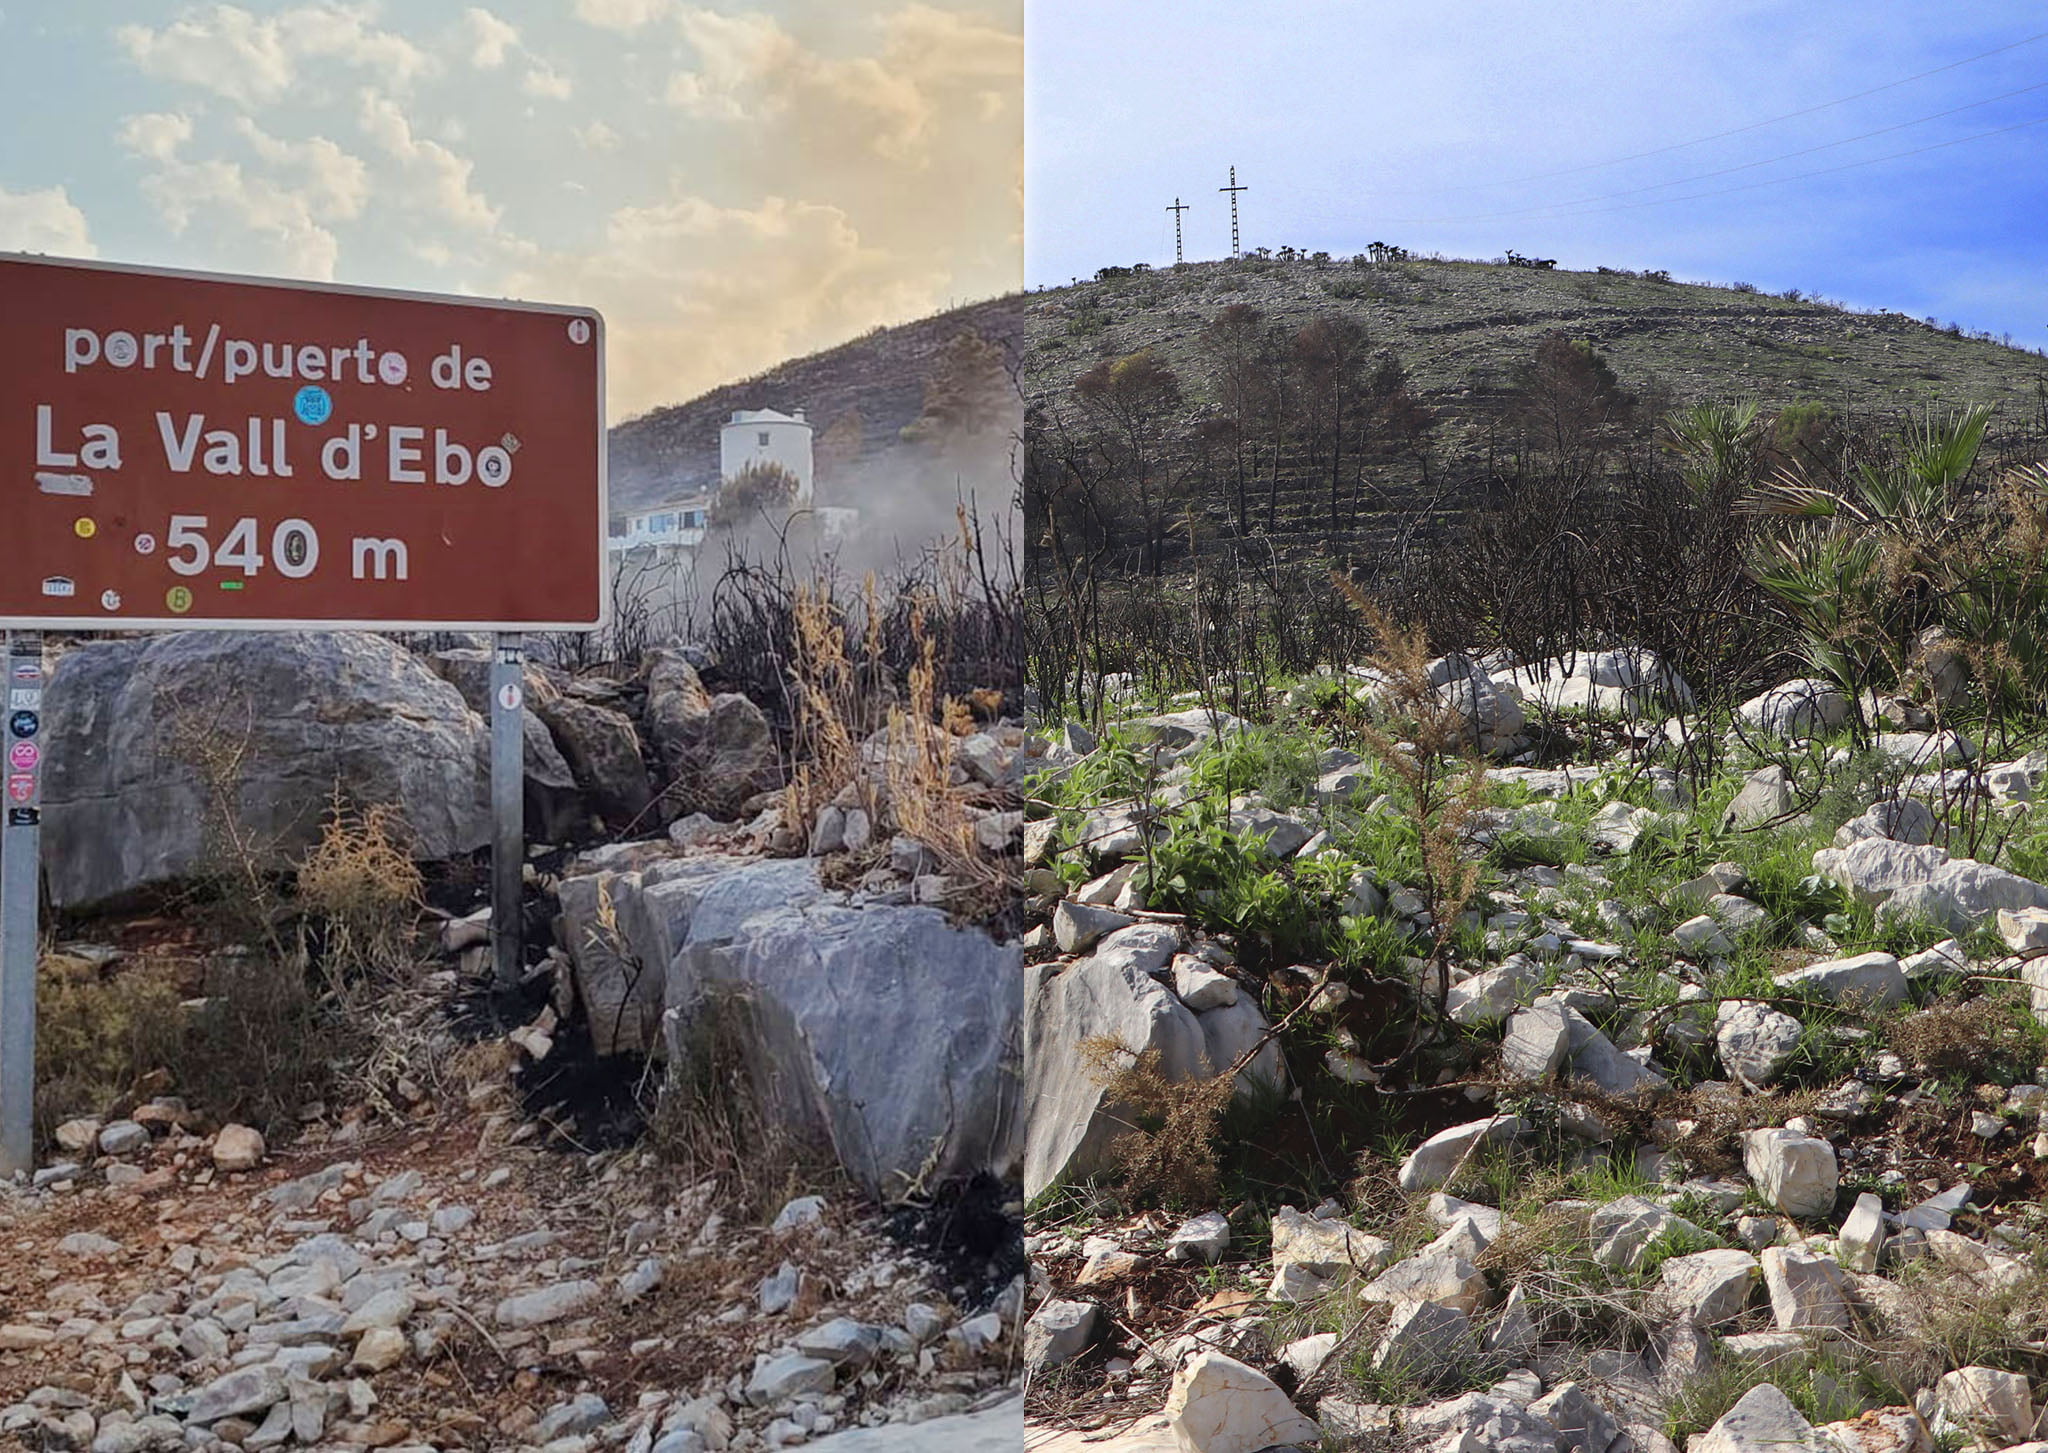 El port de la Vall d’Ebo durante y después del incendio